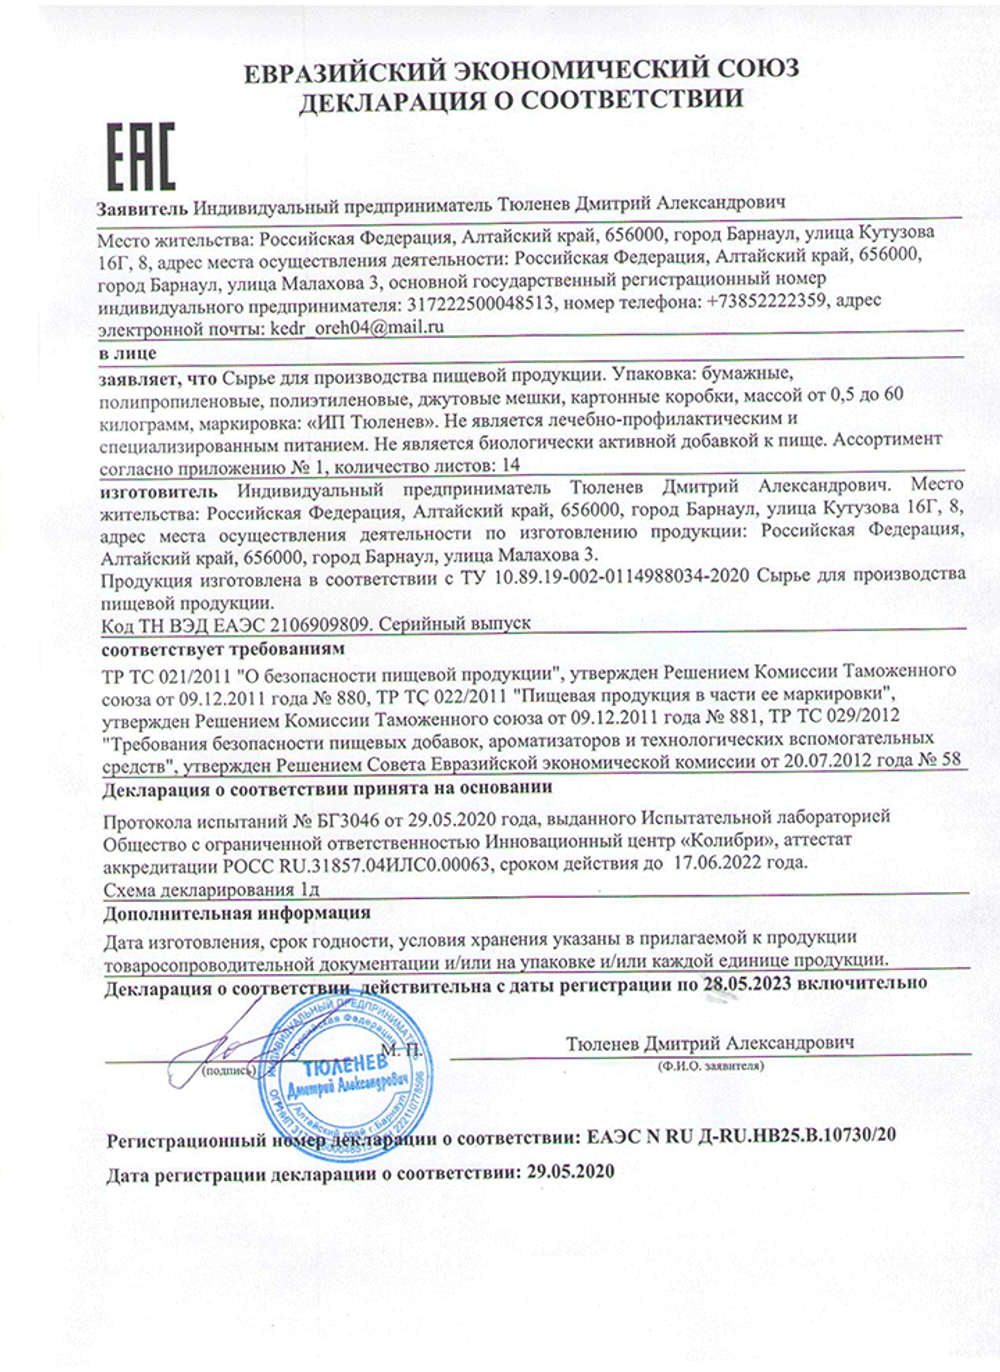 Изображение сертификата соответствия корня горичника Моррисона-adoonis.ru